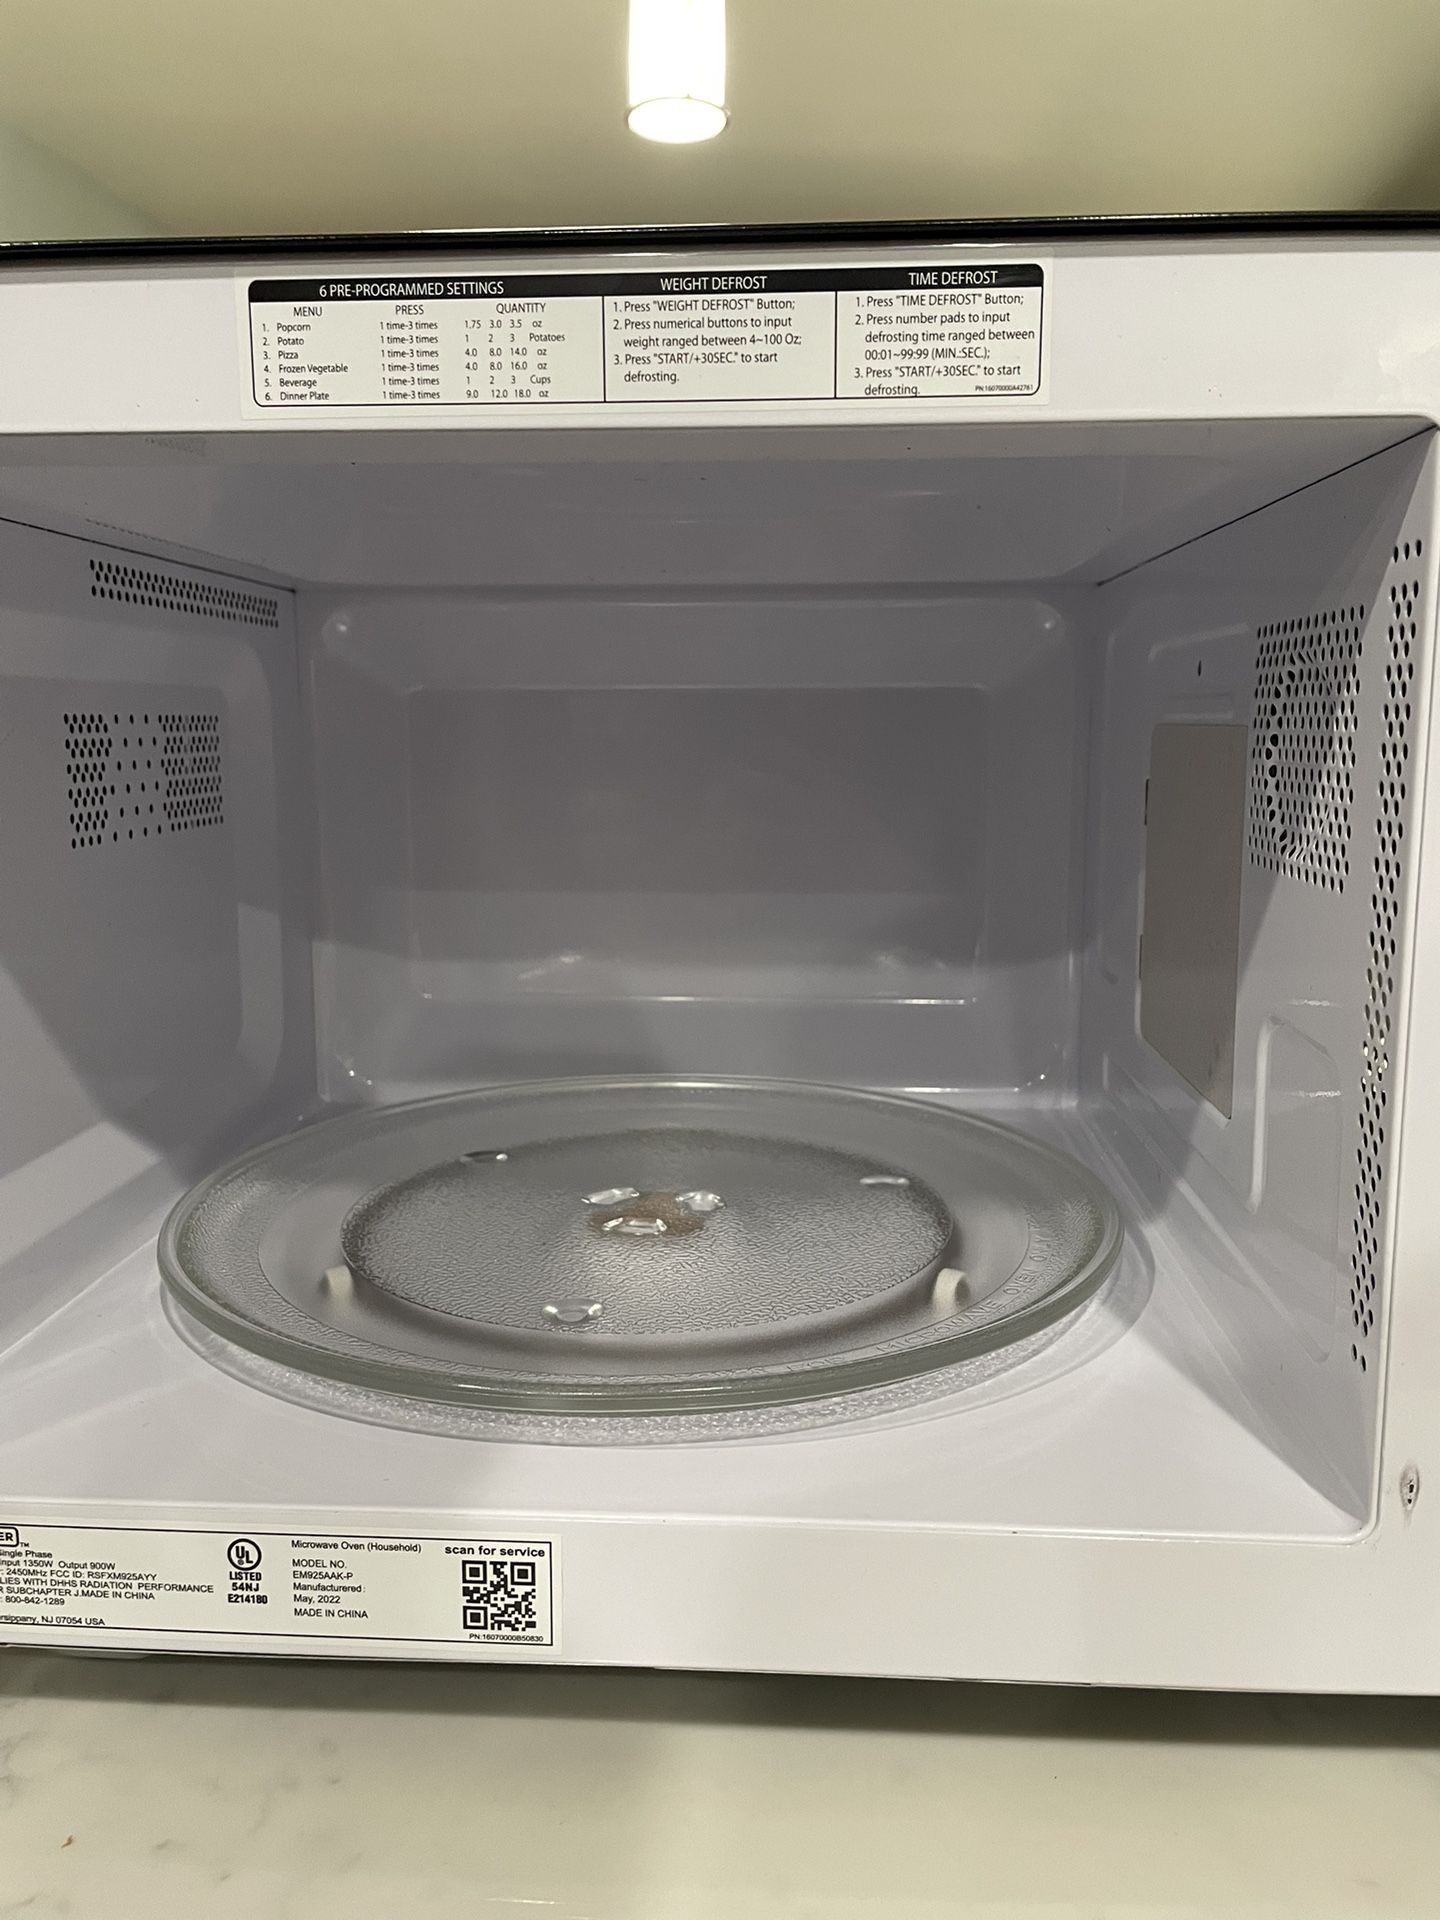 Black & Decker Microwave for Sale in Oak Glen, CA - OfferUp